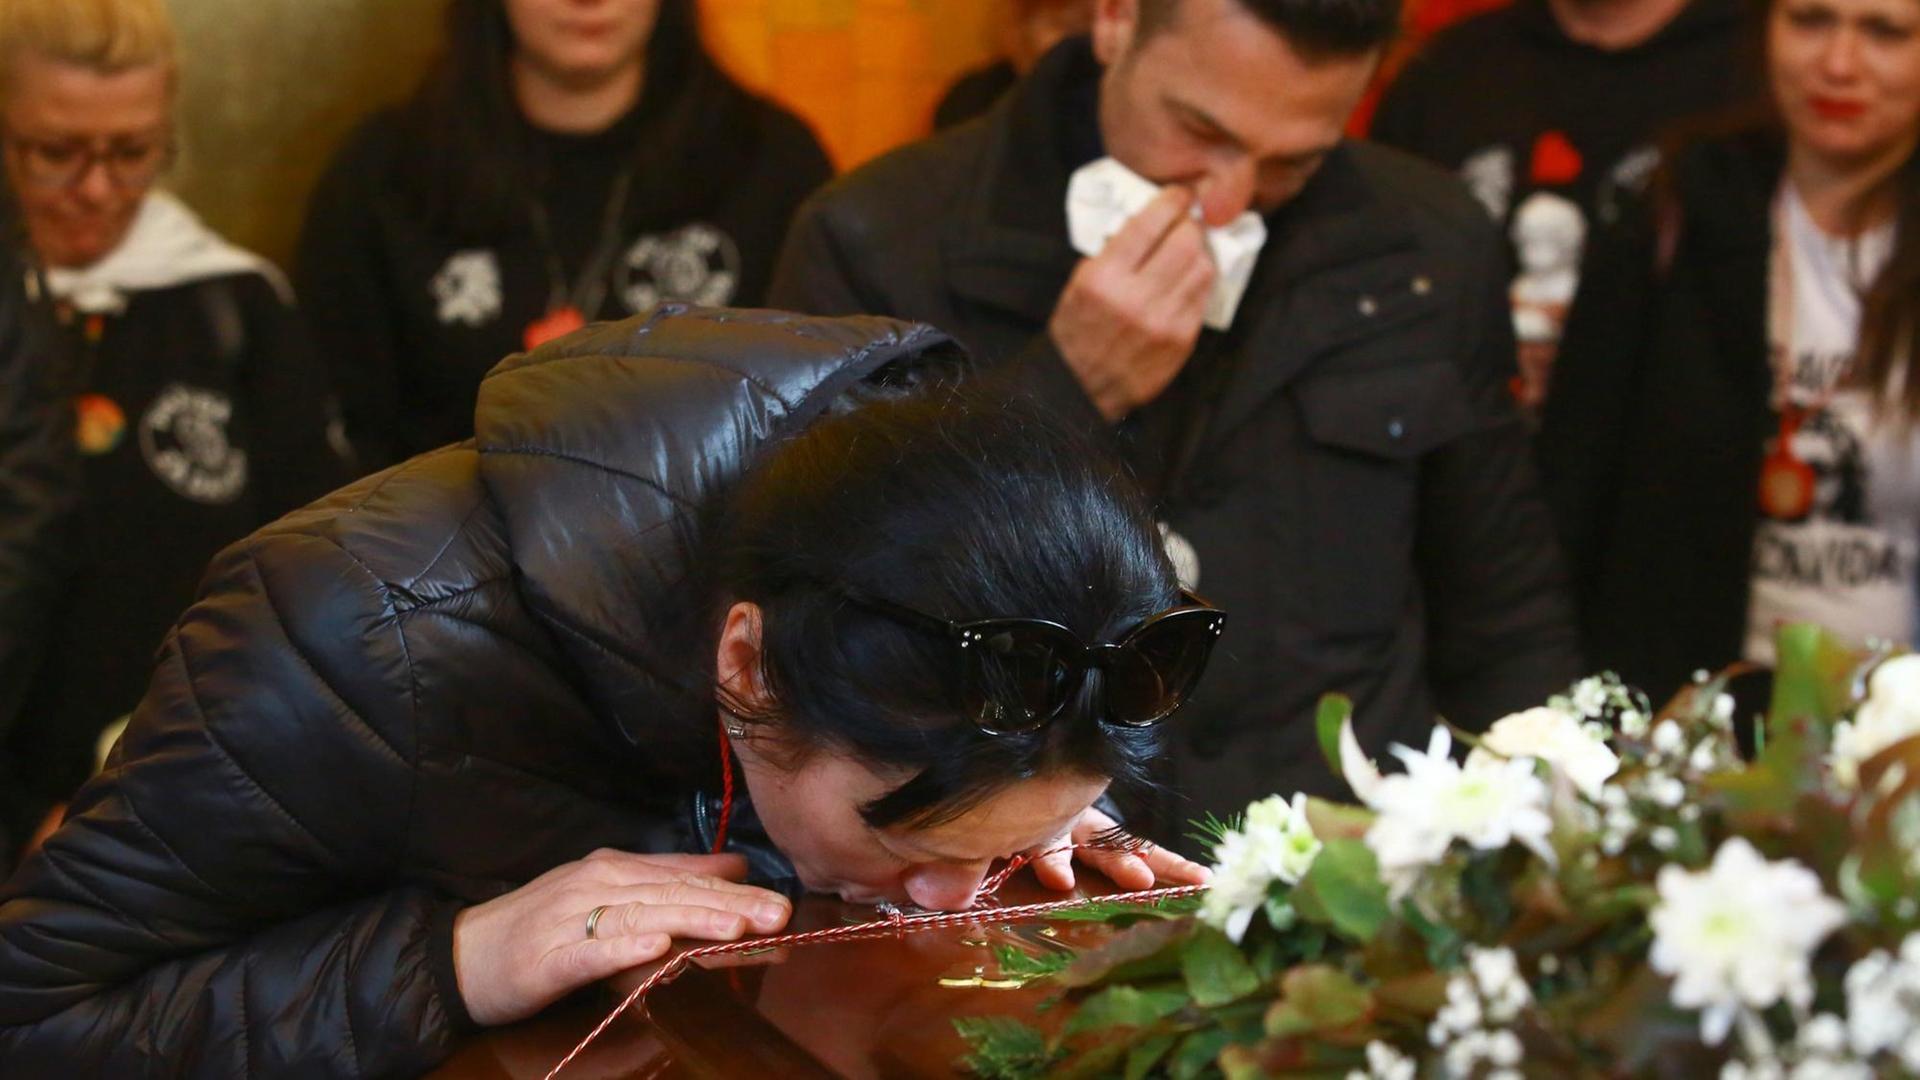 Suzana Radanovic küsste den Sarg ihres Sohnes David Dragicevic bei dessen zweiter Beerdigung in Wien. Noch immer ist unklar, wie der junge Student ums Leben gekommen ist.